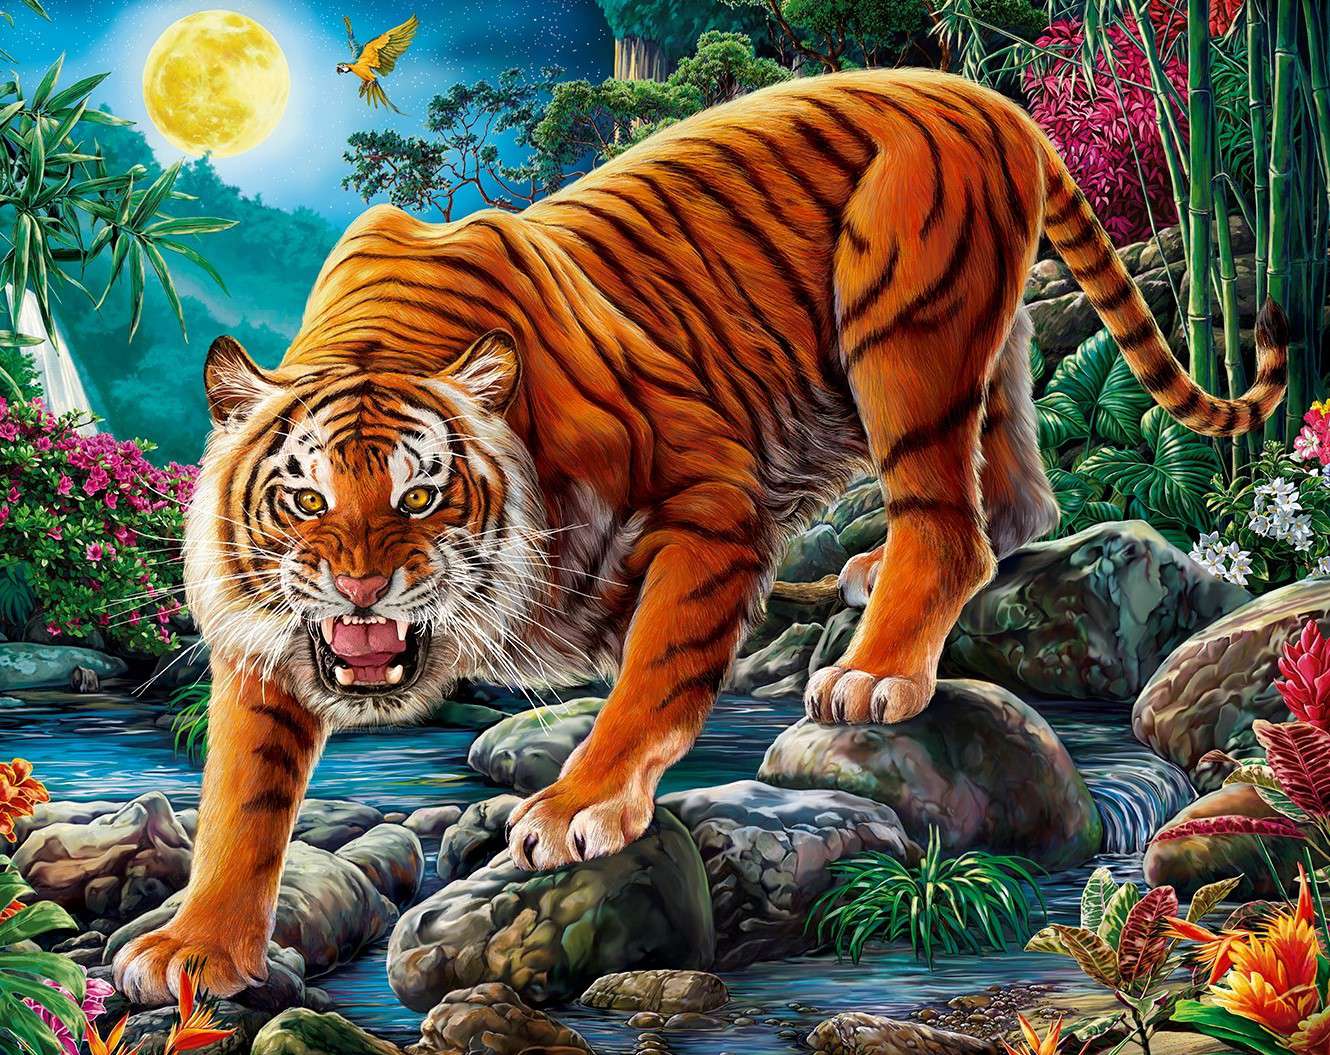 Холст по номерам ХК-6605 Ночной тигр при полной луне 30х40см 20цв Рыжий кот